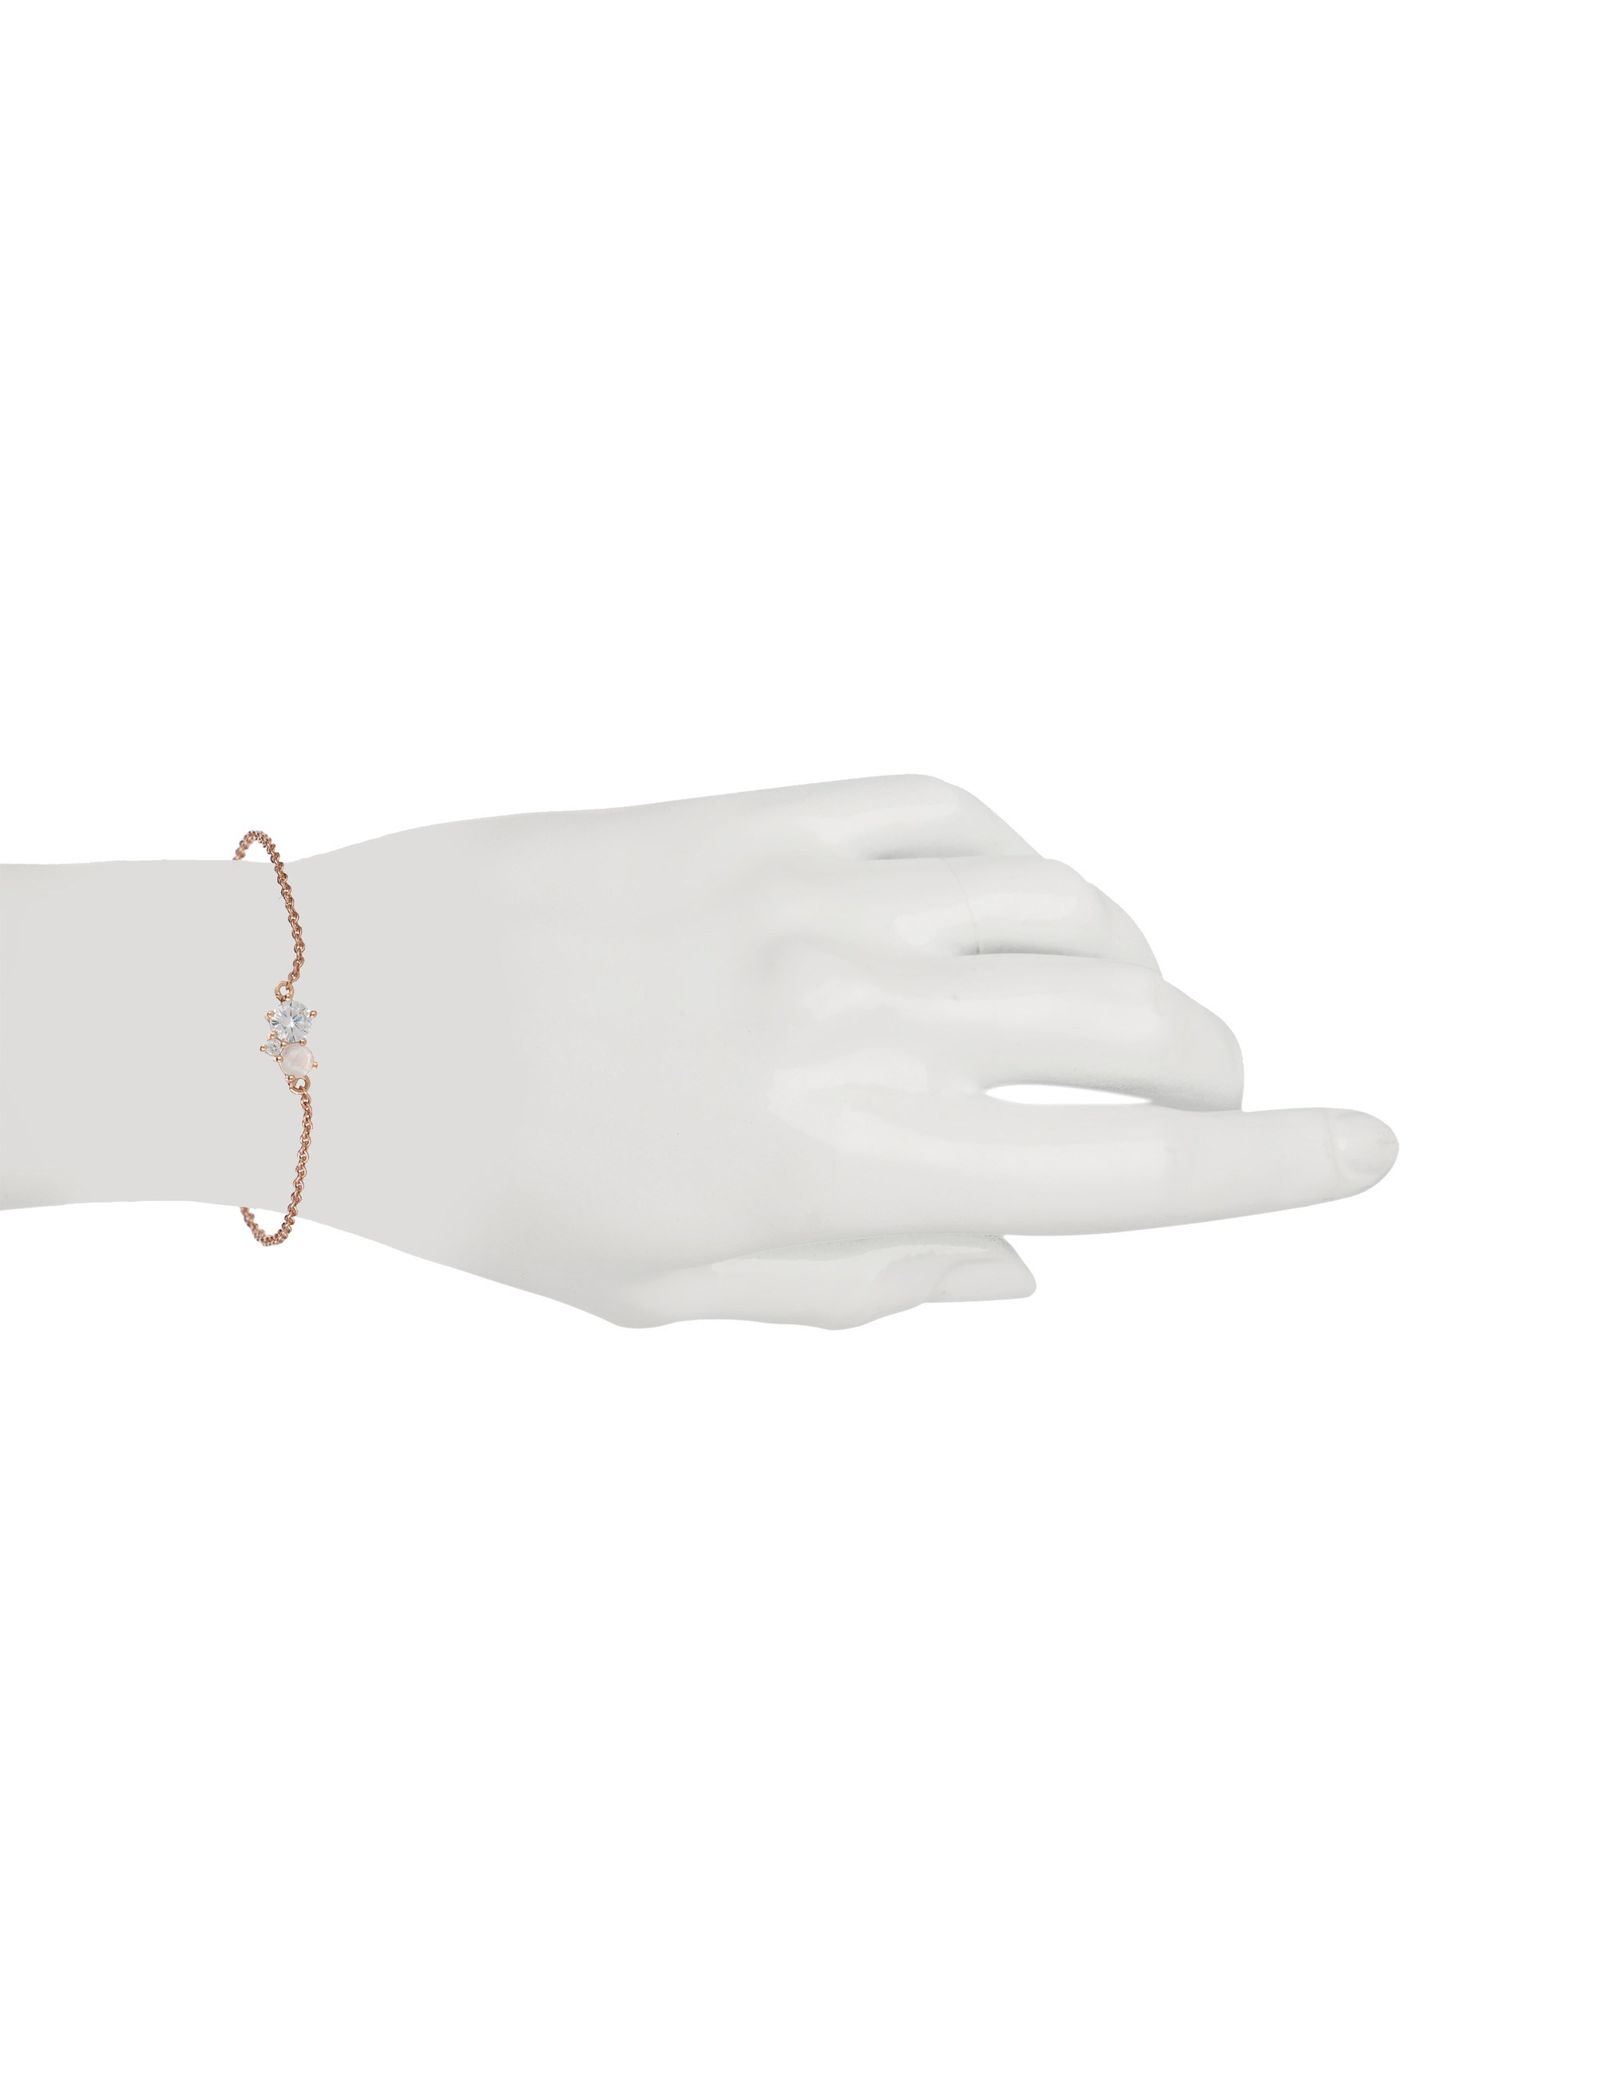 دستبند برنجی زنانه - اکسسورایز تک سایز - رزگلد - 6